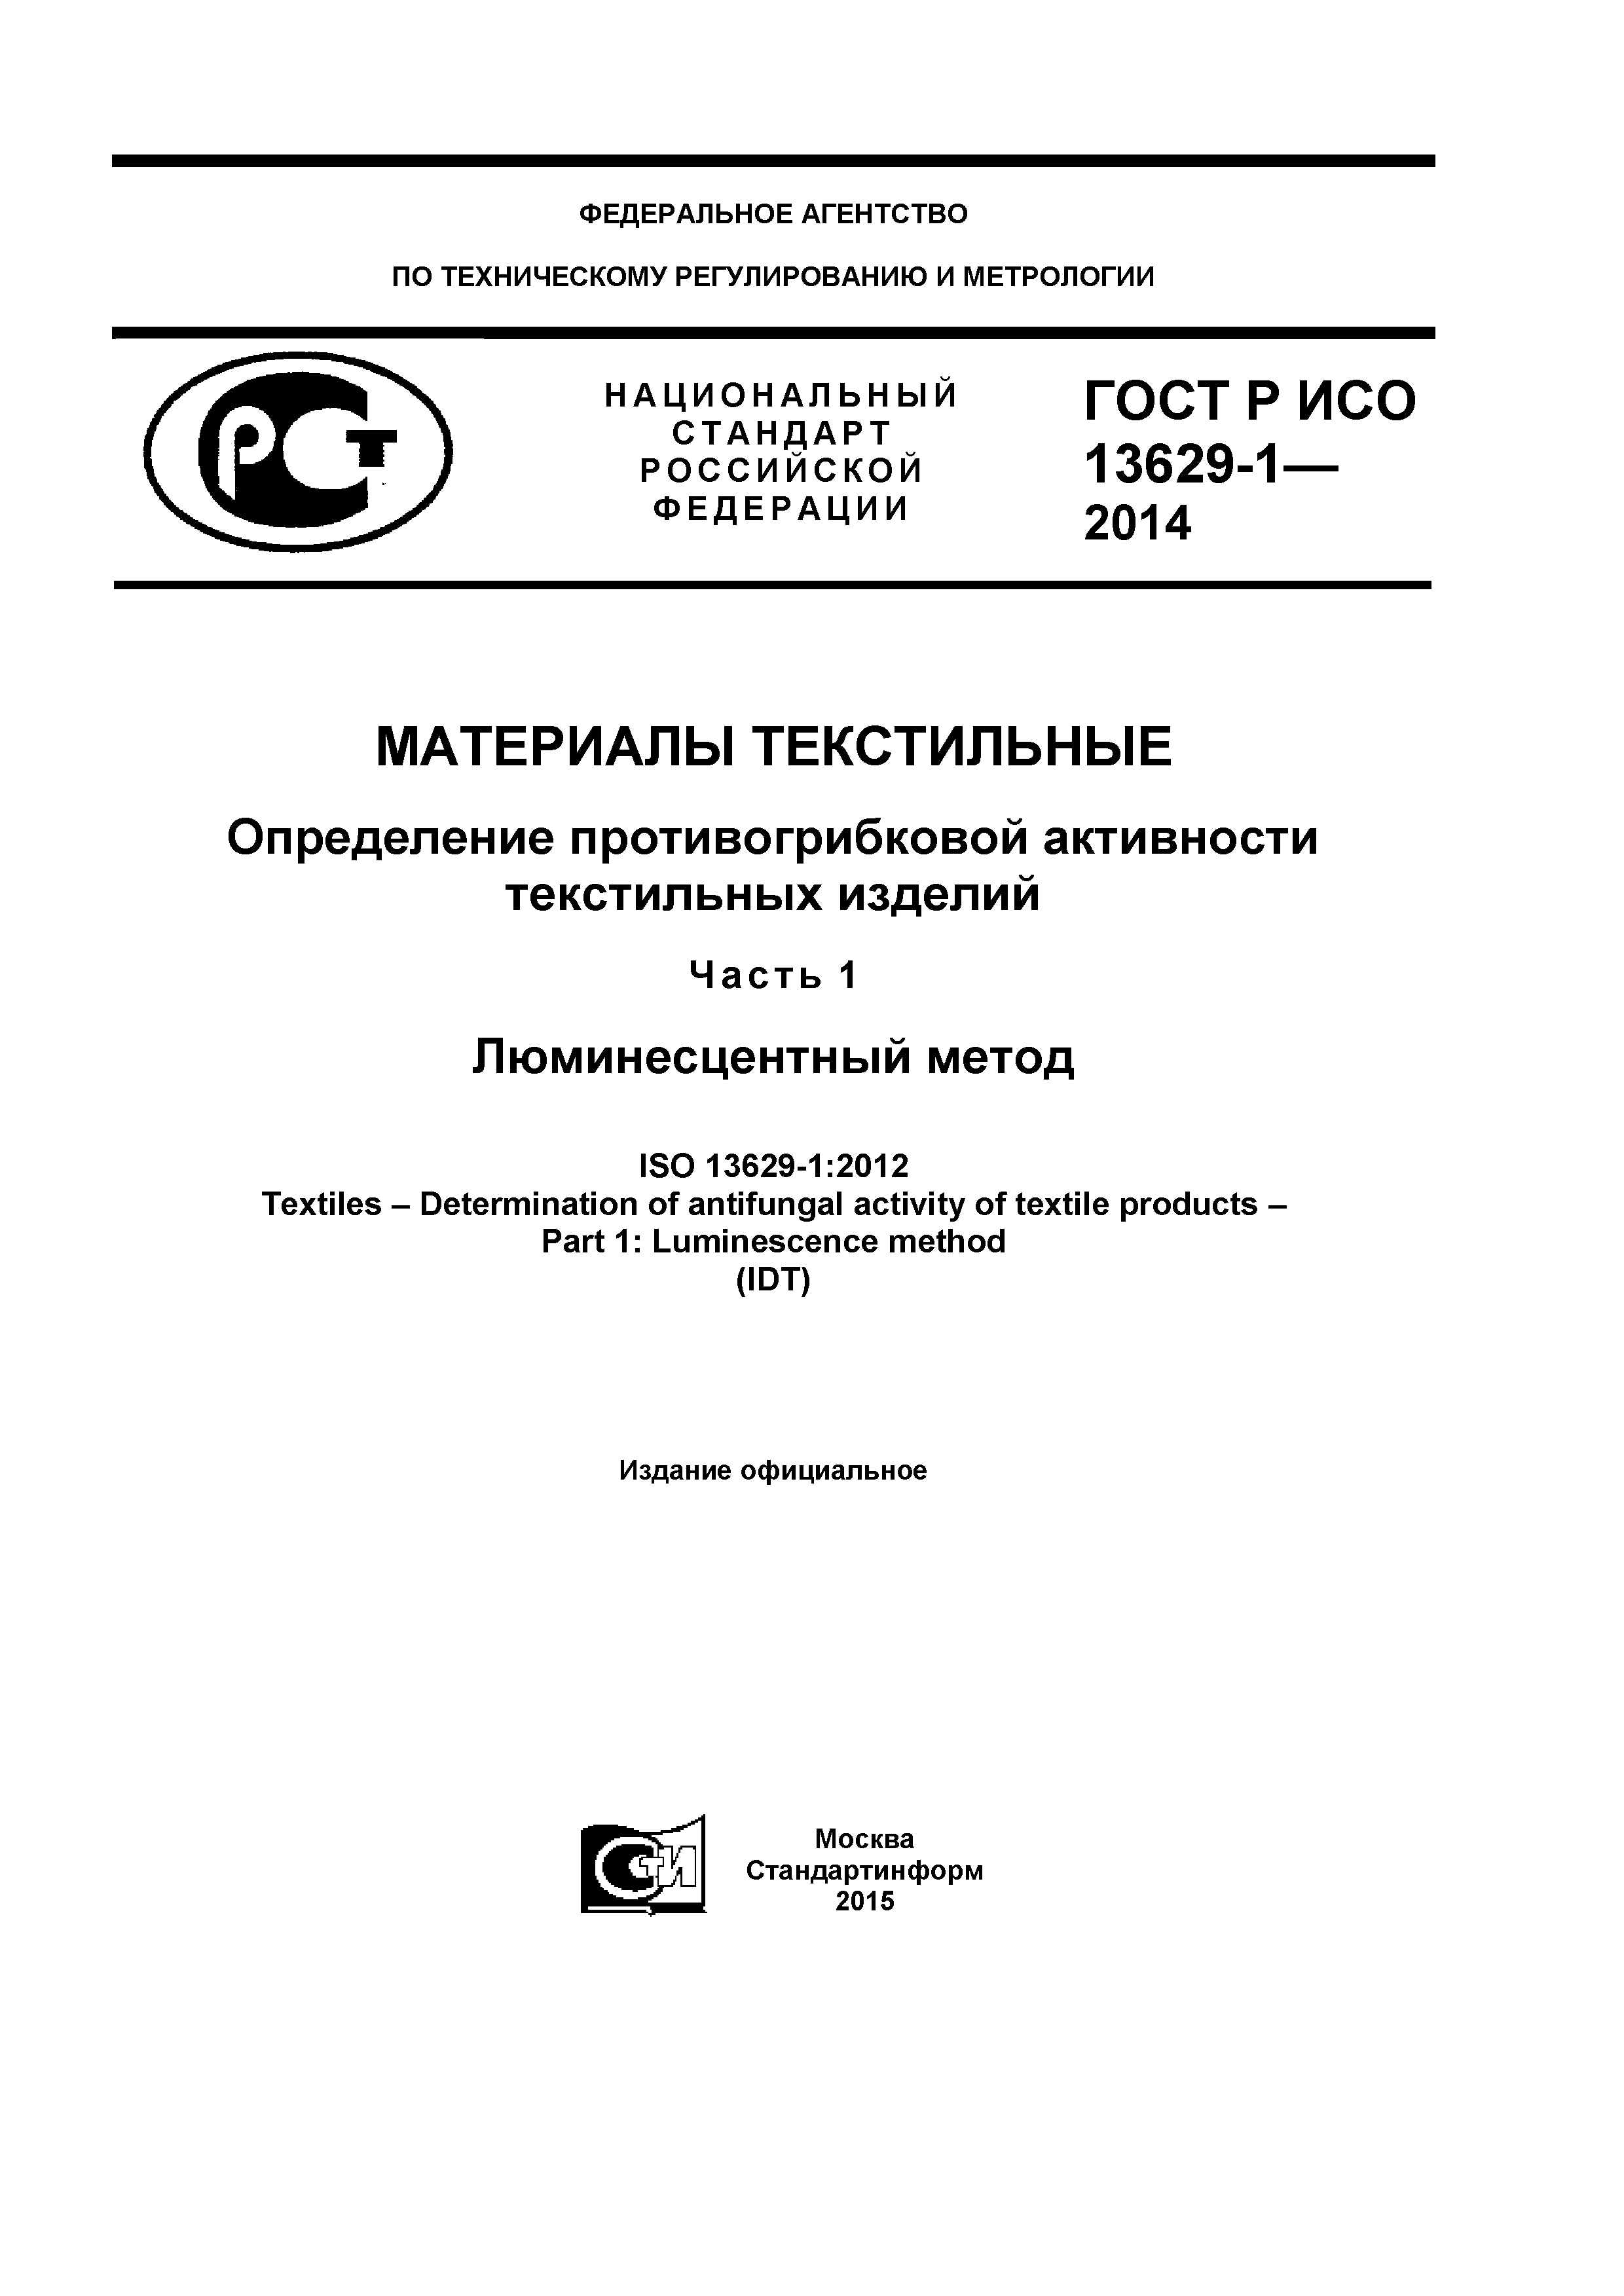 ГОСТ Р ИСО 13629-1-2014